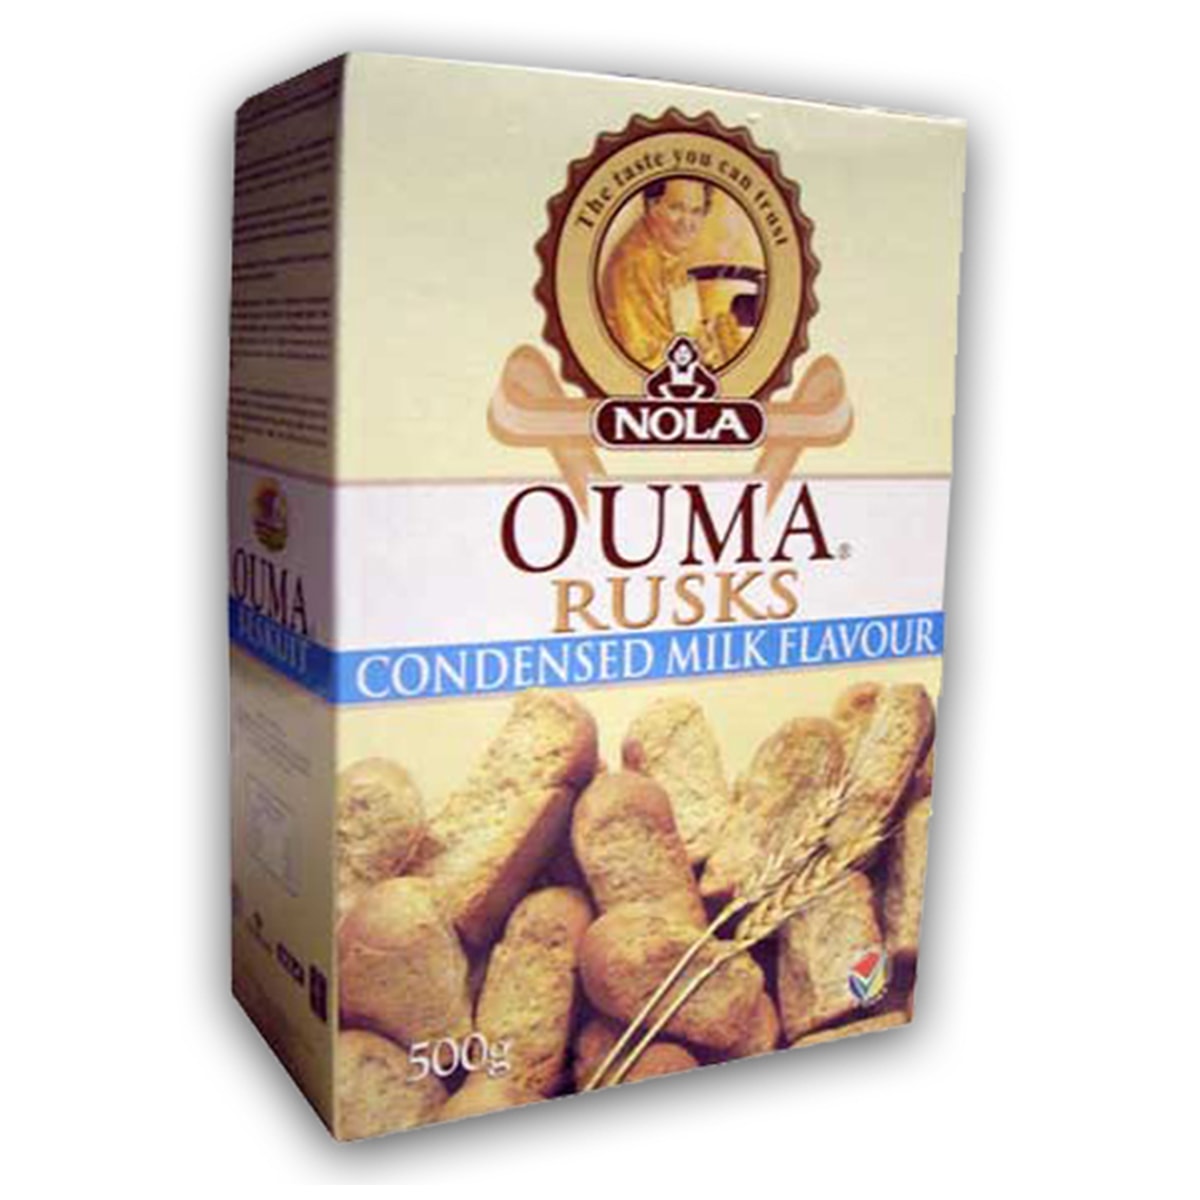 Buy Ouma Condensed Milk Rusks - 500 gm